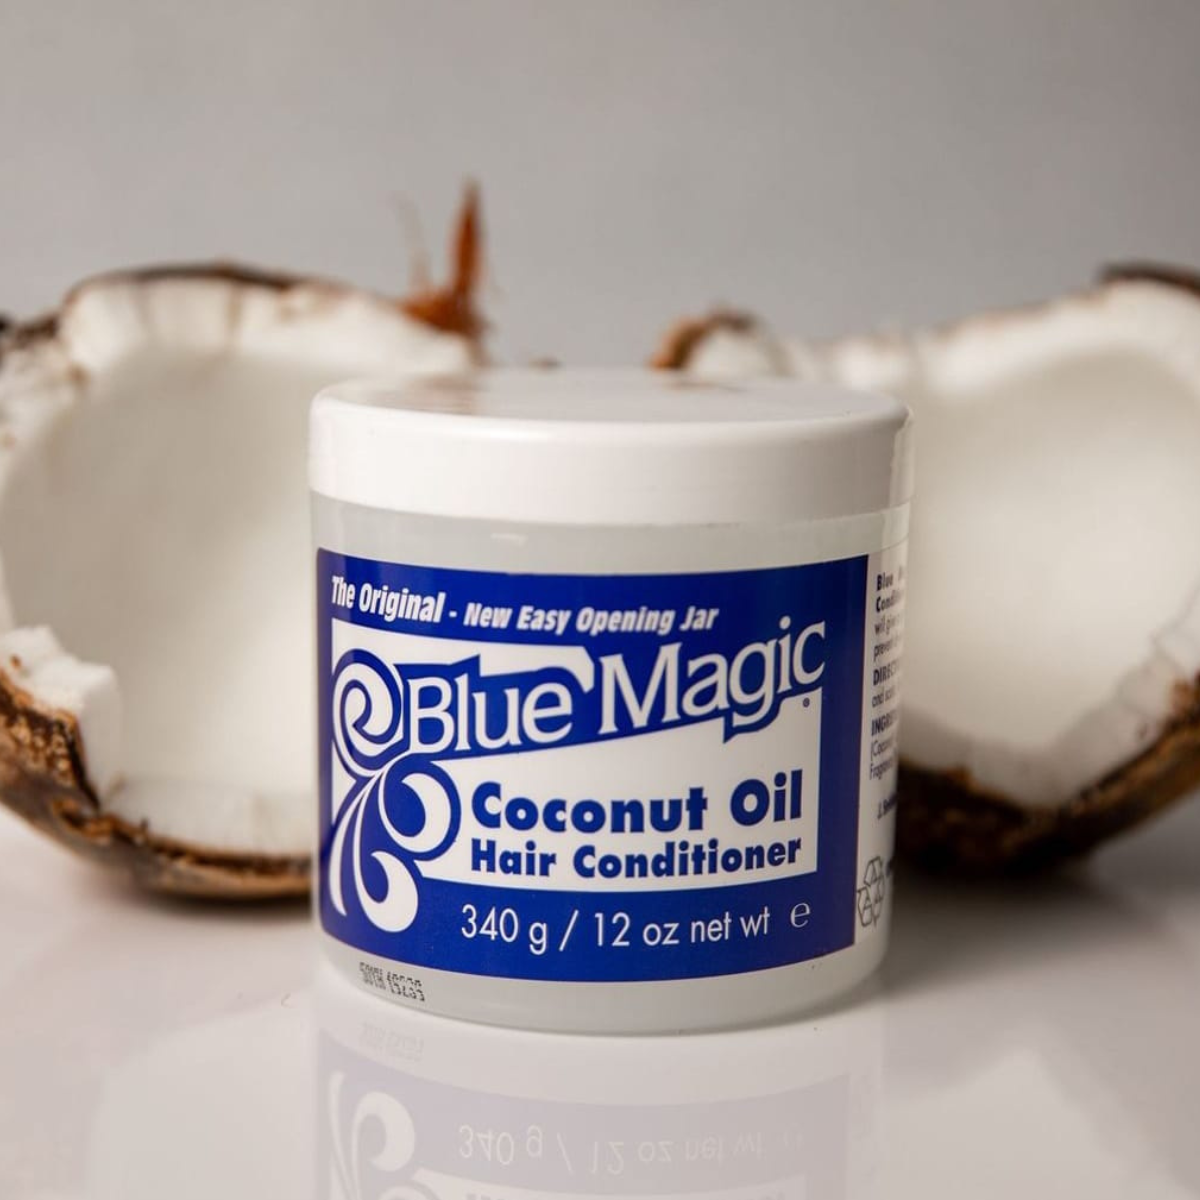 blue Magic hair conditioner coconut oil comprar en onlineshoppingcenterg Colombia centro de compras en linea osc 3